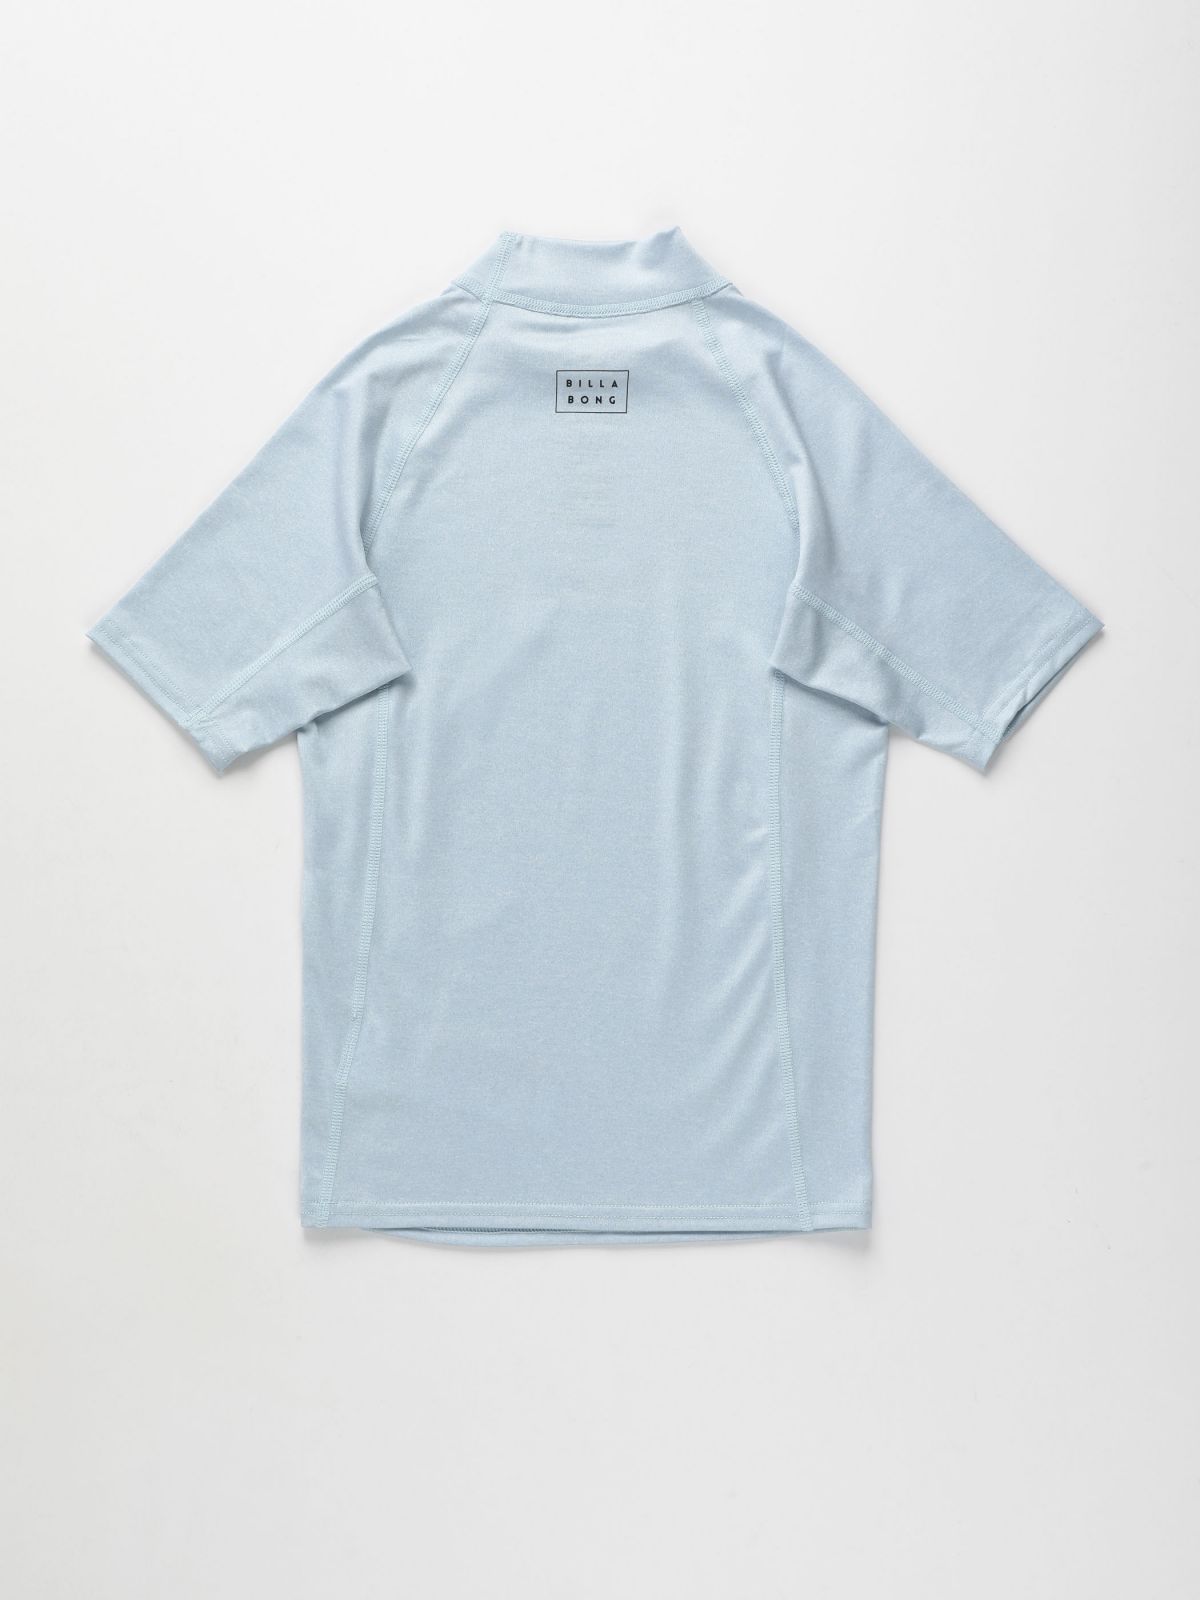  חולצת גלישה עם הדפס לוגו / בנים של BILLABONG